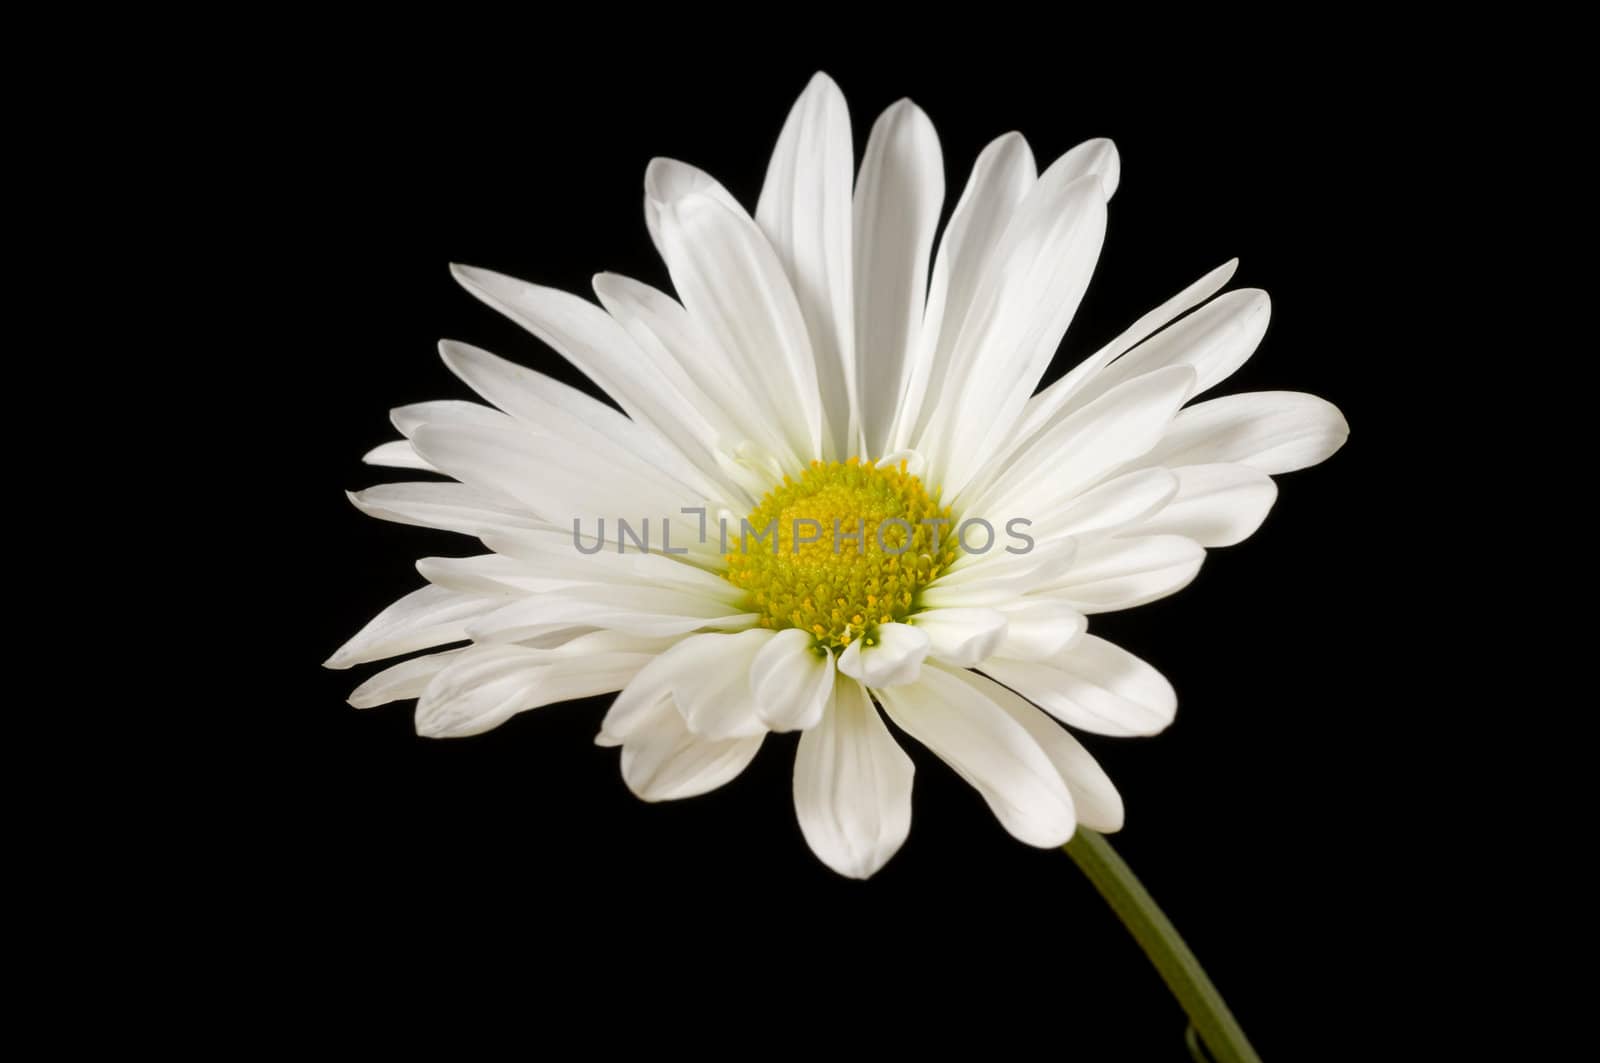 Macro image of single daisy on black background